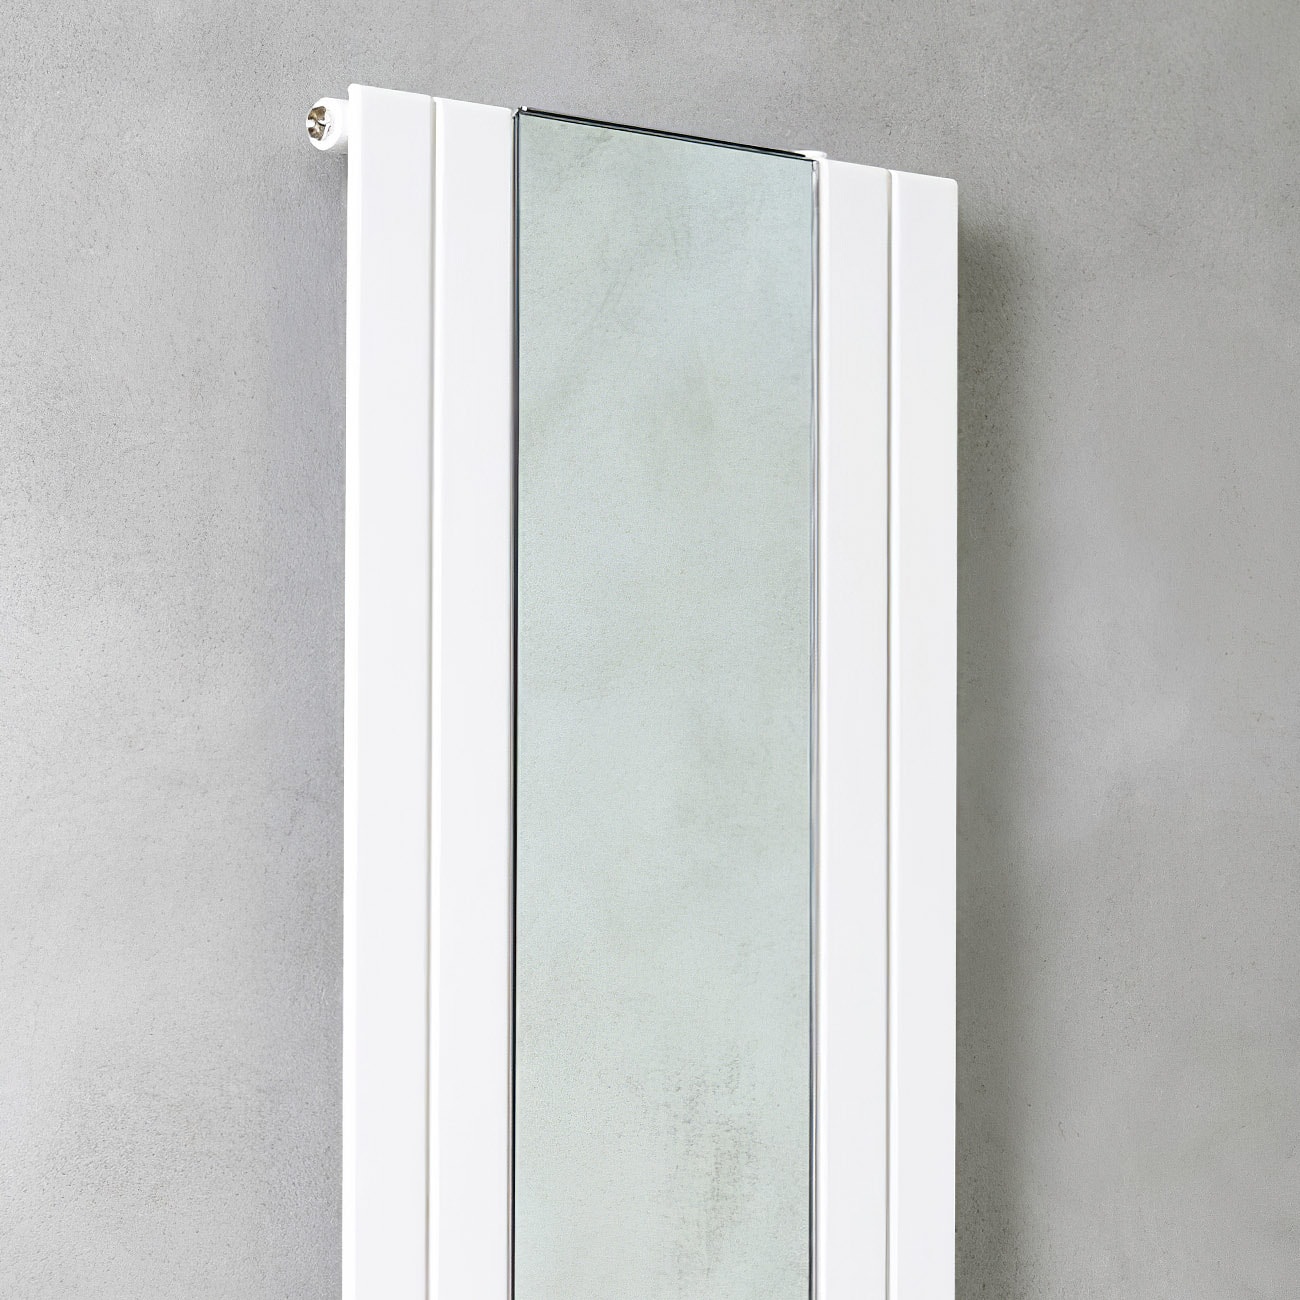 Picchio Specchio - Moderner CALEIDO Heizkörper mit zentralem Glasspiegel | Radiamo